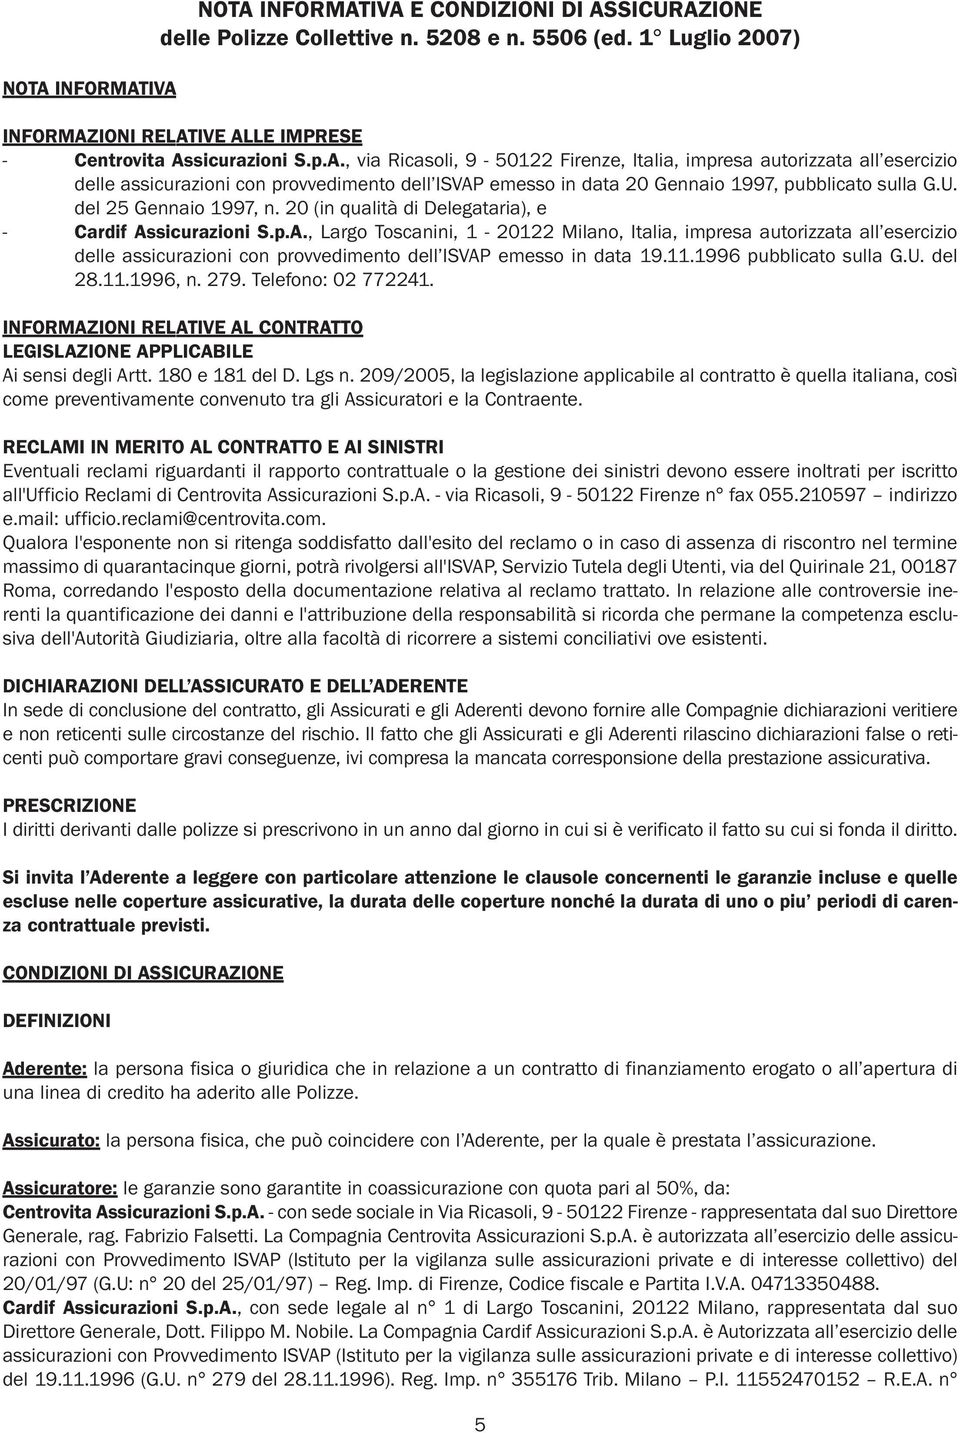 sicurazioni S.p.A., Largo Toscanini, 1-20122 Milano, Italia, impresa autorizzata all esercizio delle assicurazioni con provvedimento dell ISVAP emesso in data 19.11.1996 pubblicato sulla G.U. del 28.